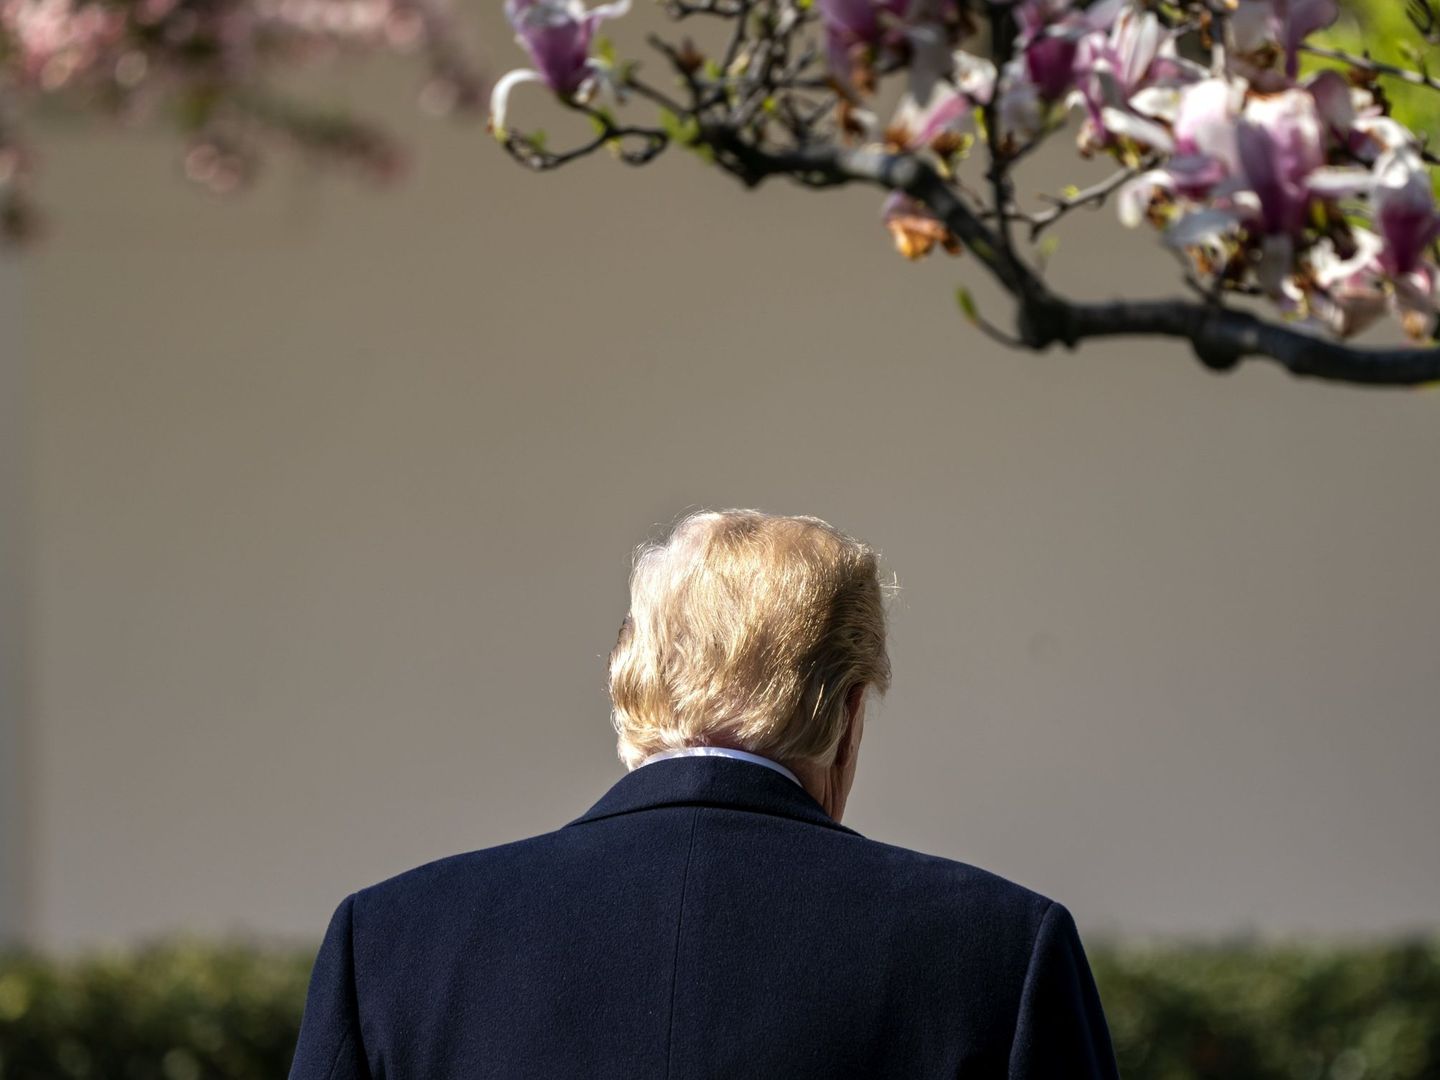 El presidente Trump se retira tras participar en un evento en el jardín Sur de la Casa Blanca, el 10 de abril de 2018. (EFE)